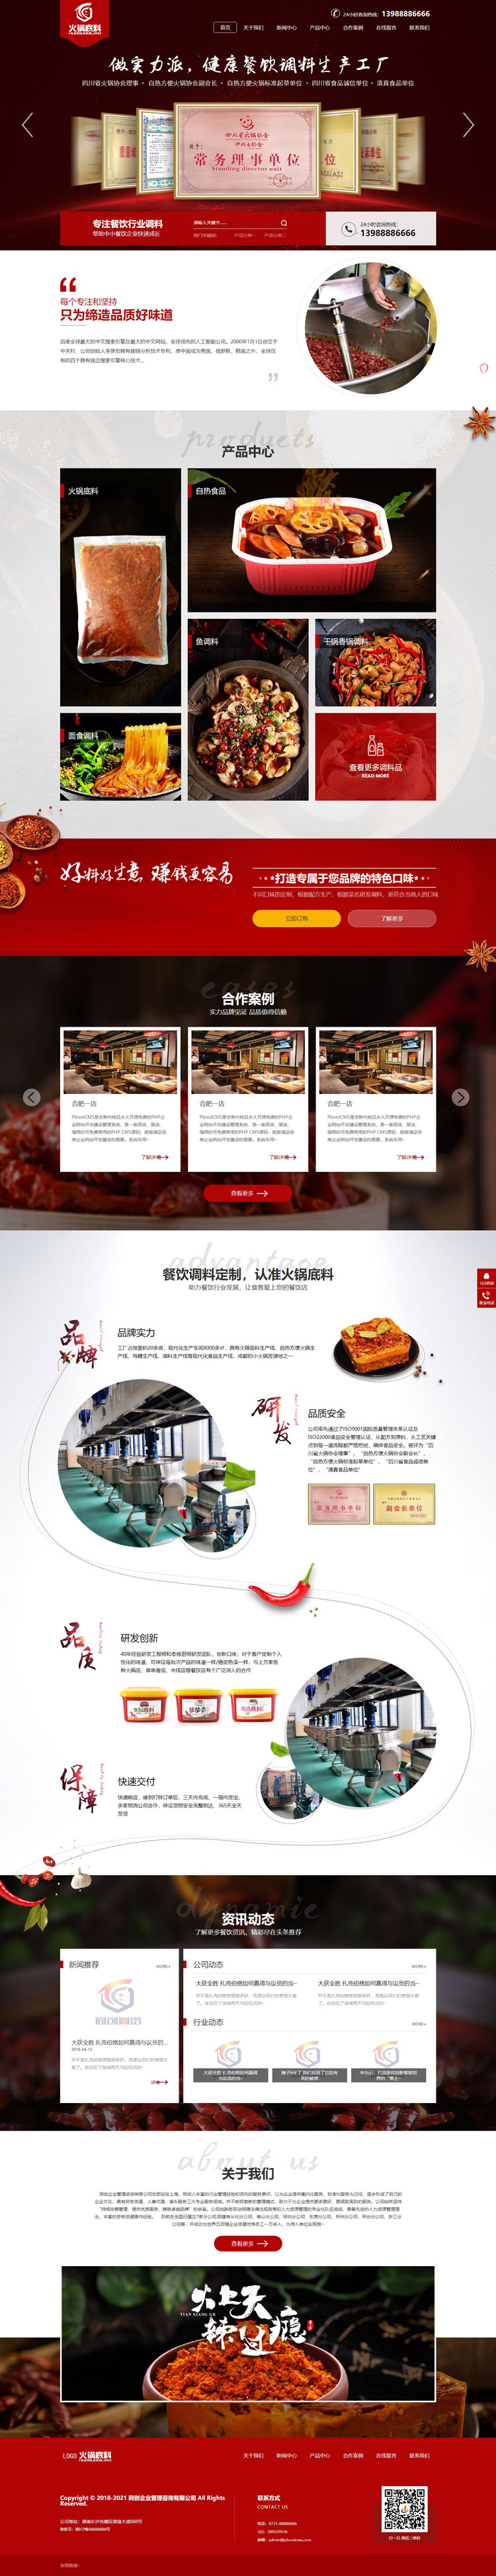 高端火锅底料餐饮调料食品营销型网站模板-PB088-2